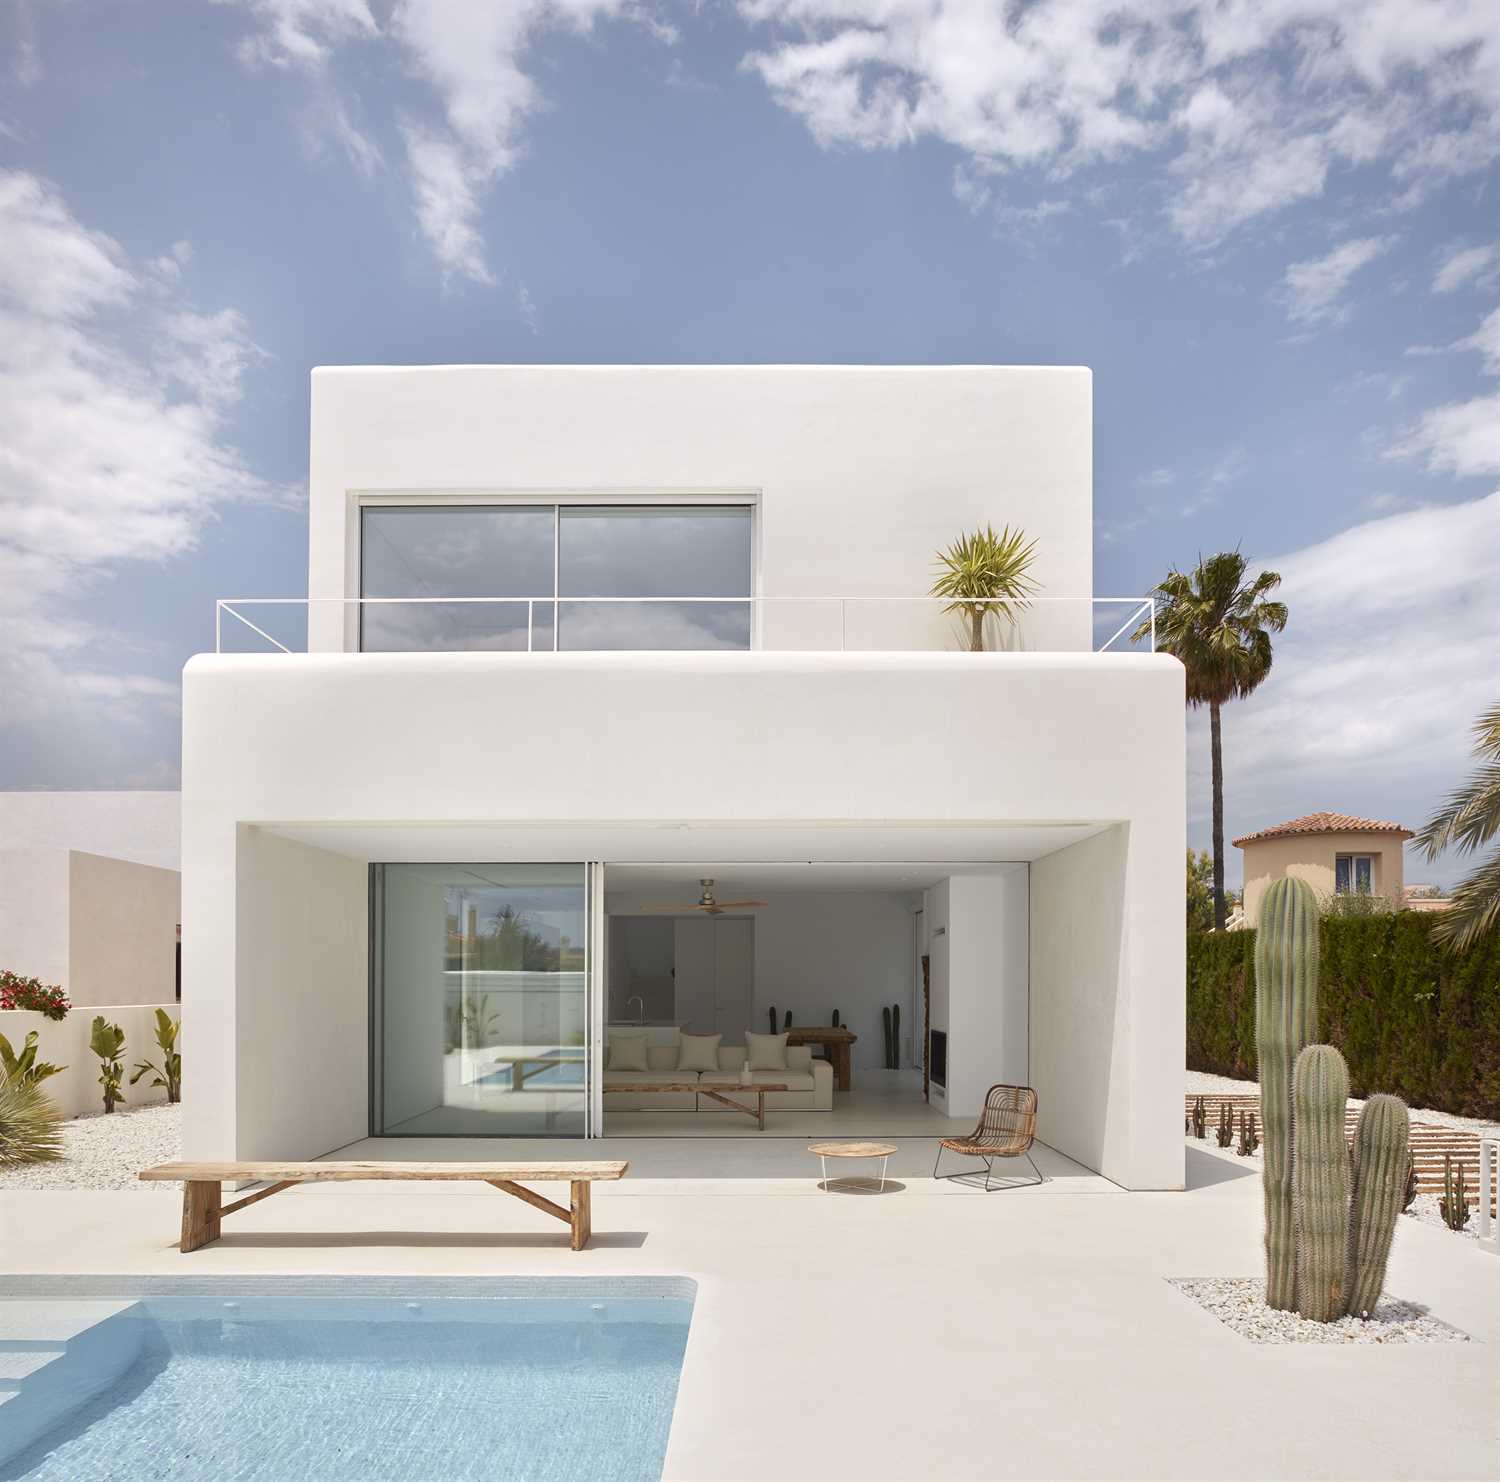 색상이 흰색인 마이크로 시멘트로 개조된 집.